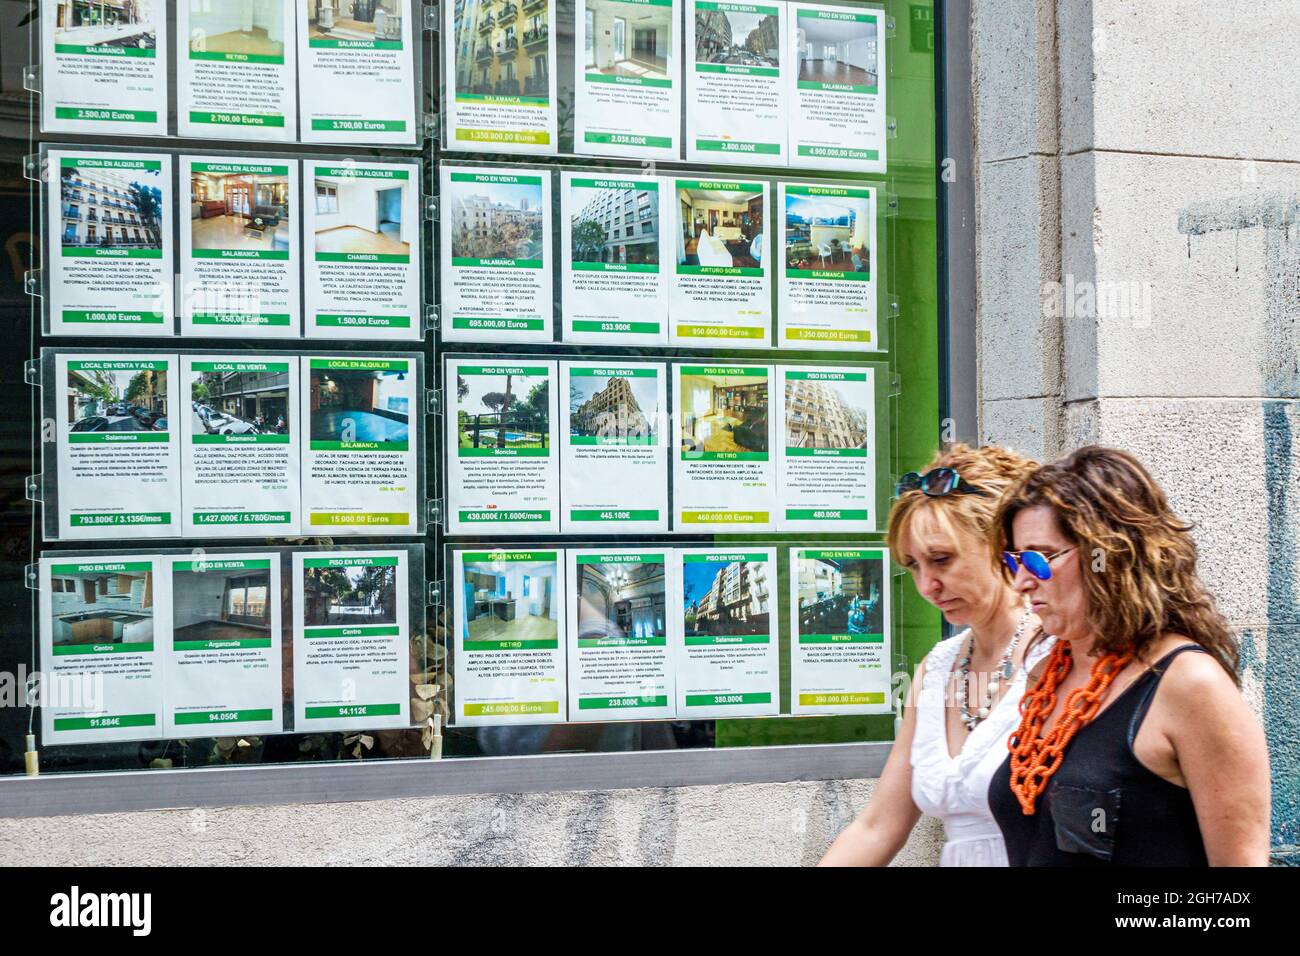 Madrid Espagne,Centro,agent immobilier,afficher appartements condos vente location louer laisser hispanique femmes femme Banque D'Images